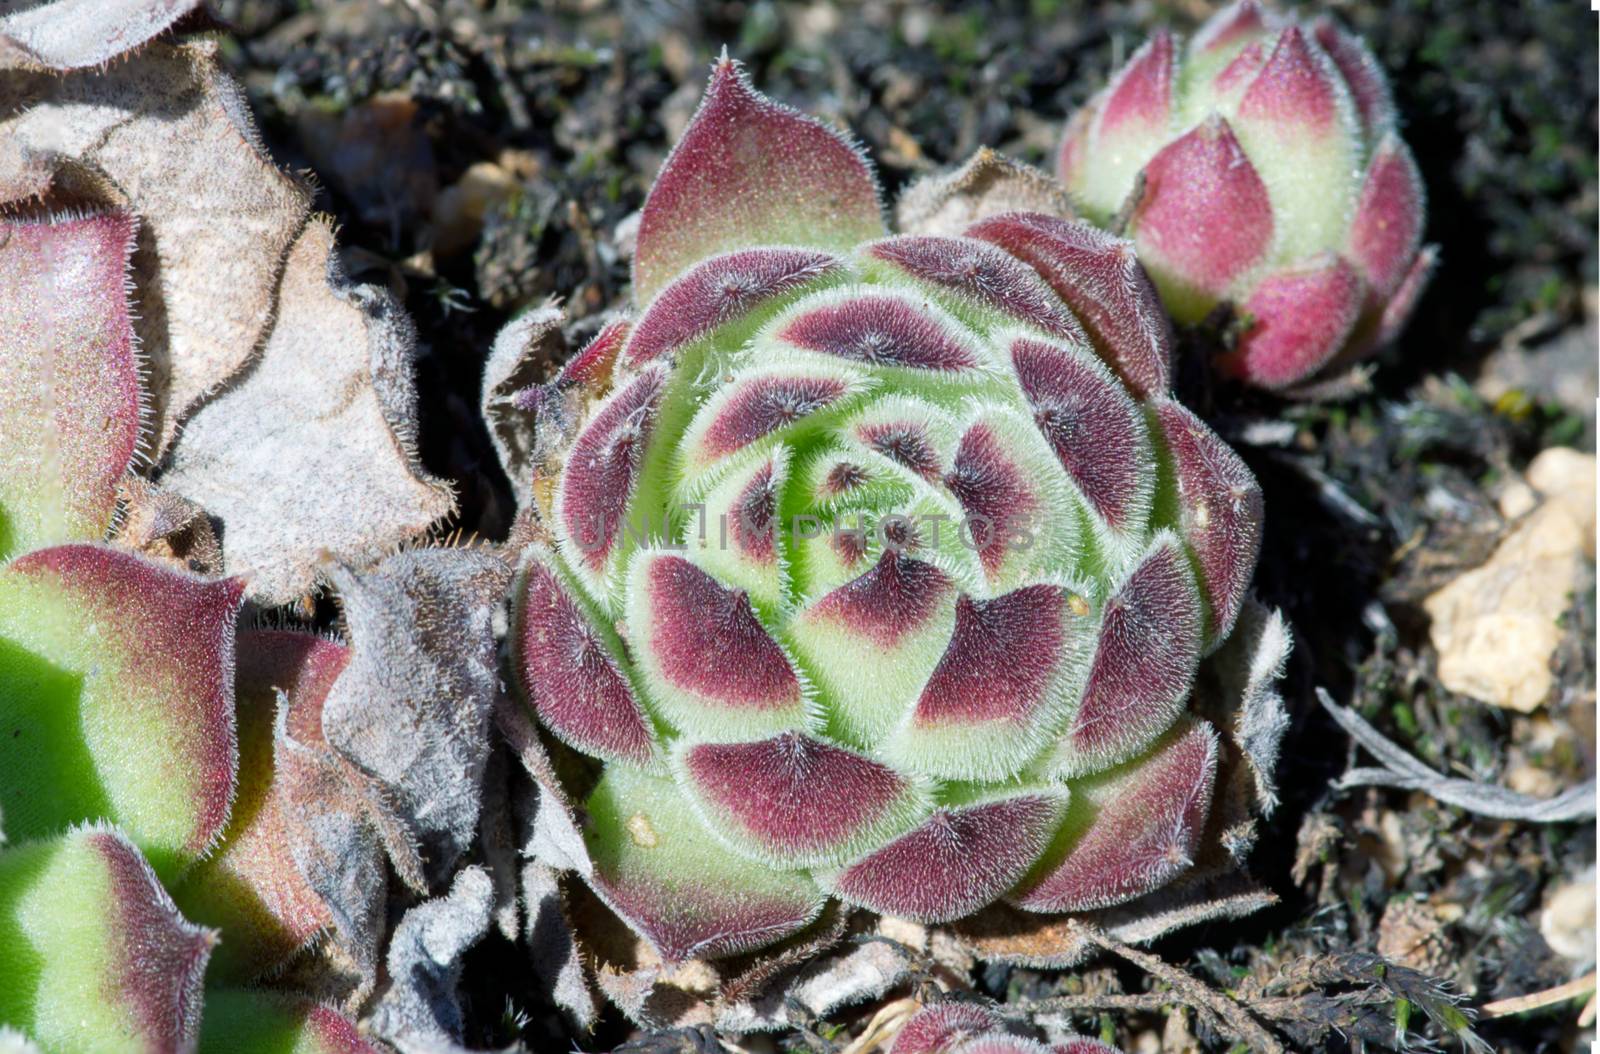 Miniature succulent plants.Closeup of stonecrop by dolnikow